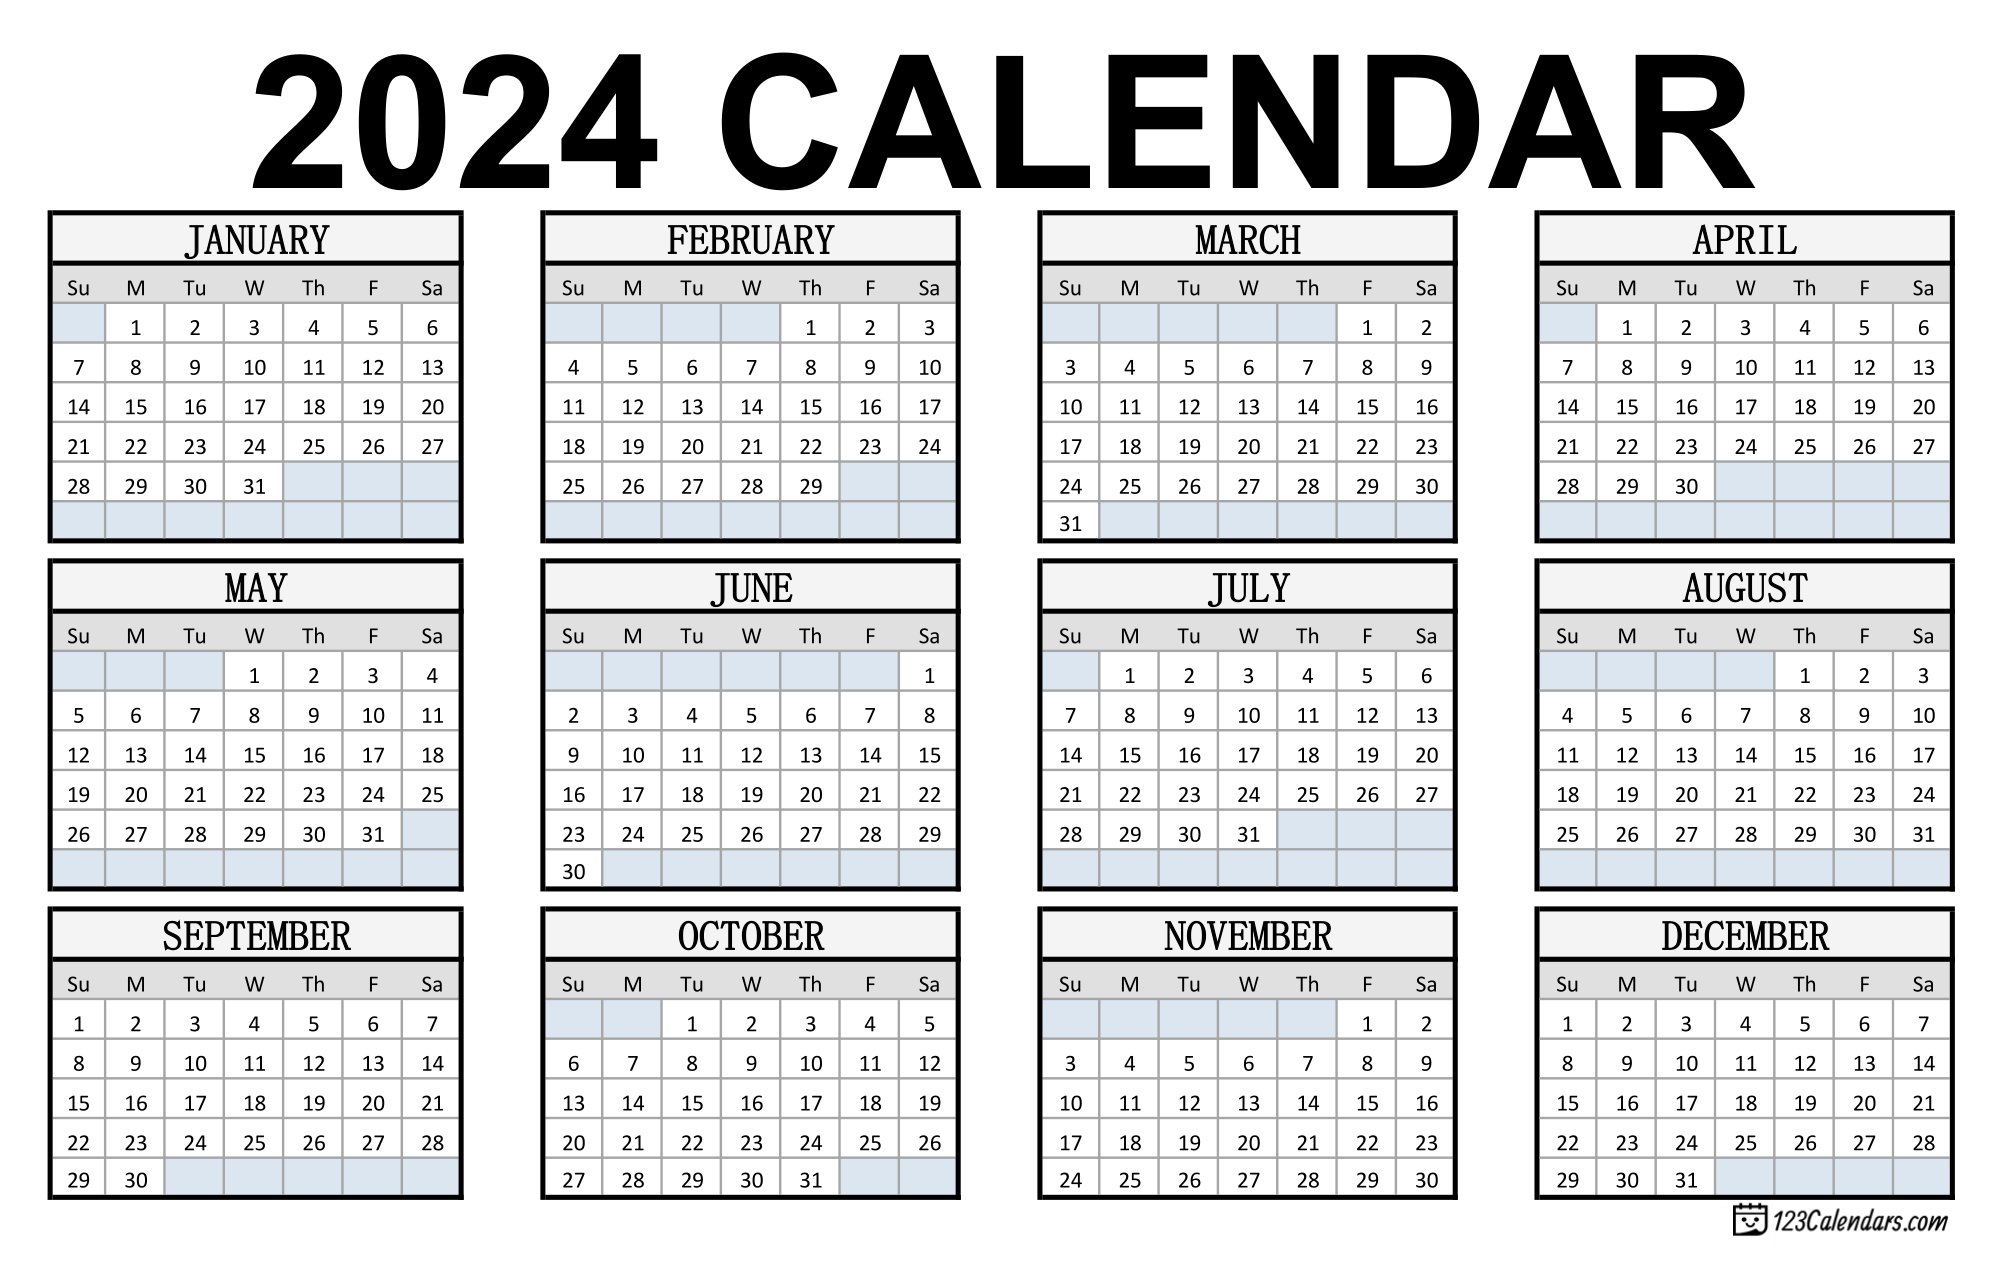 Prinatble Calendar 2024 Bunny Cordula